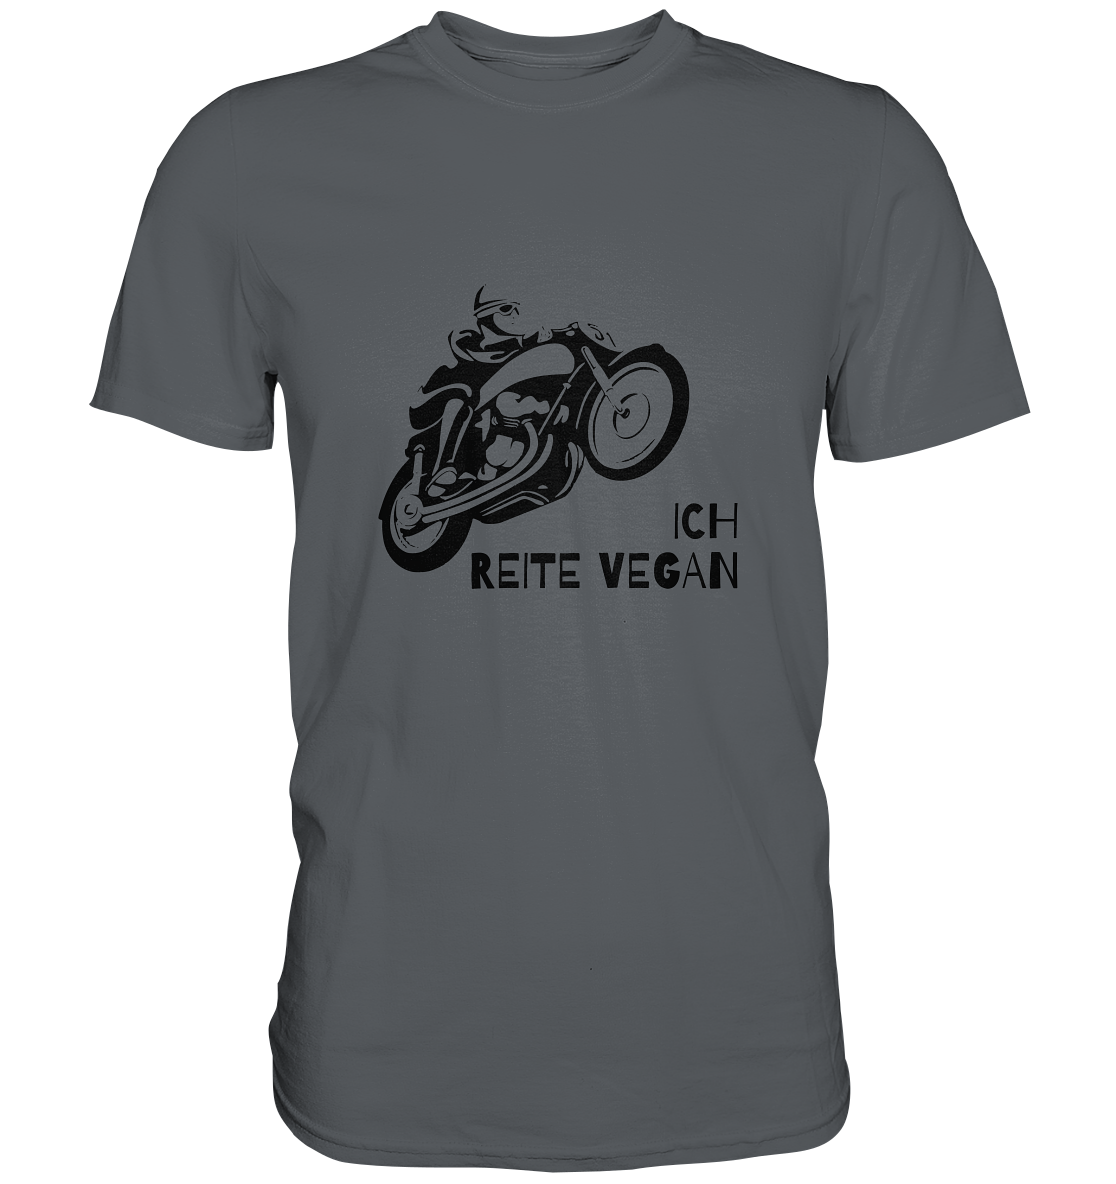 T-Shirt, Herren, Rundhals, mit Aufdruck Motorrad und Spruch "Ich reite vegan", grau